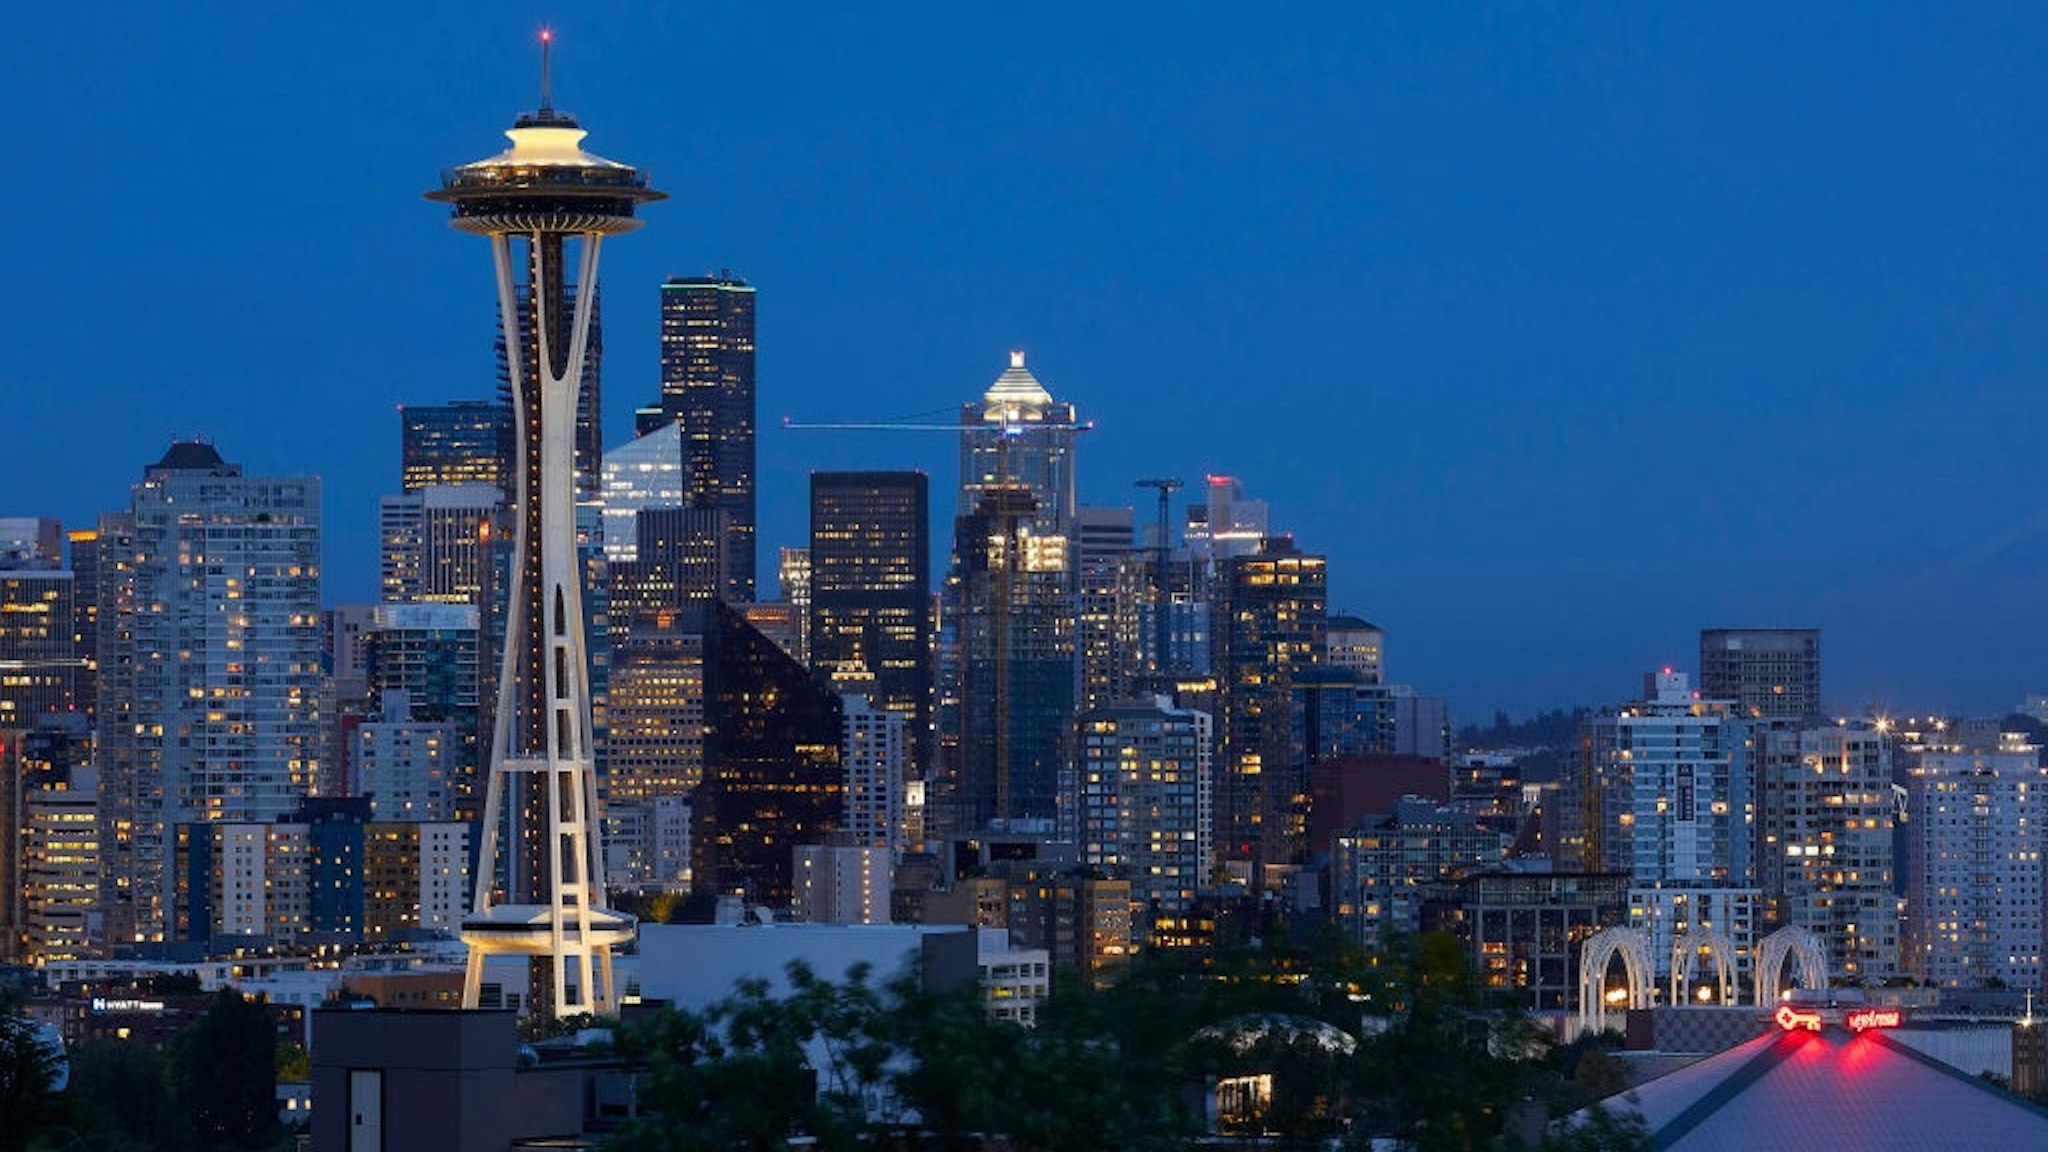 Illuminated tower and city at night. Space Needle, Seattle, United States. Architect: Olson Kundig, 2020.